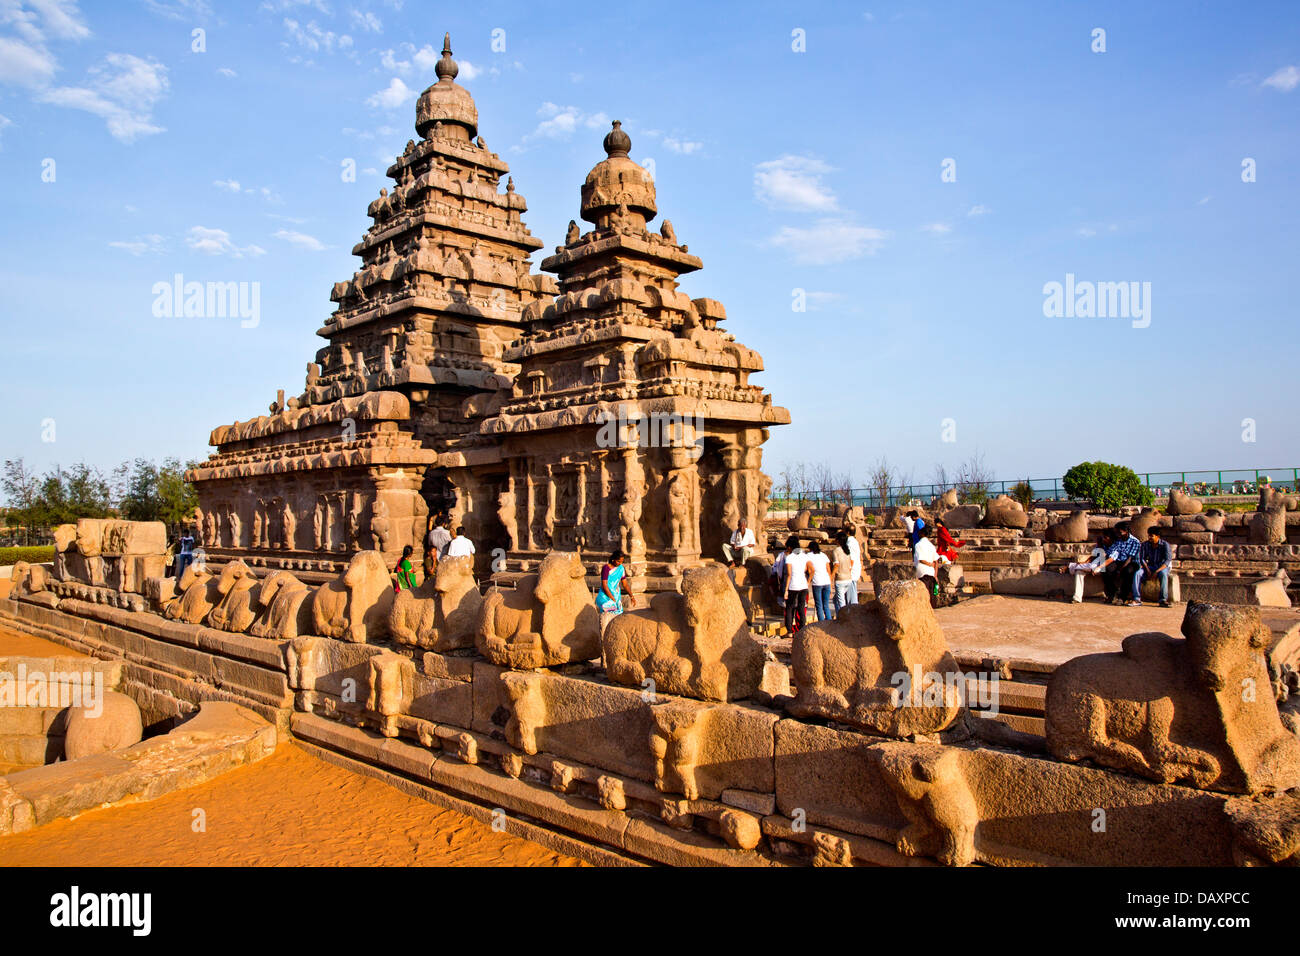 Les touristes dans un temple, temple du Rivage, Mahabalipuram, district de Kanchipuram, au Tamil Nadu, Inde Banque D'Images